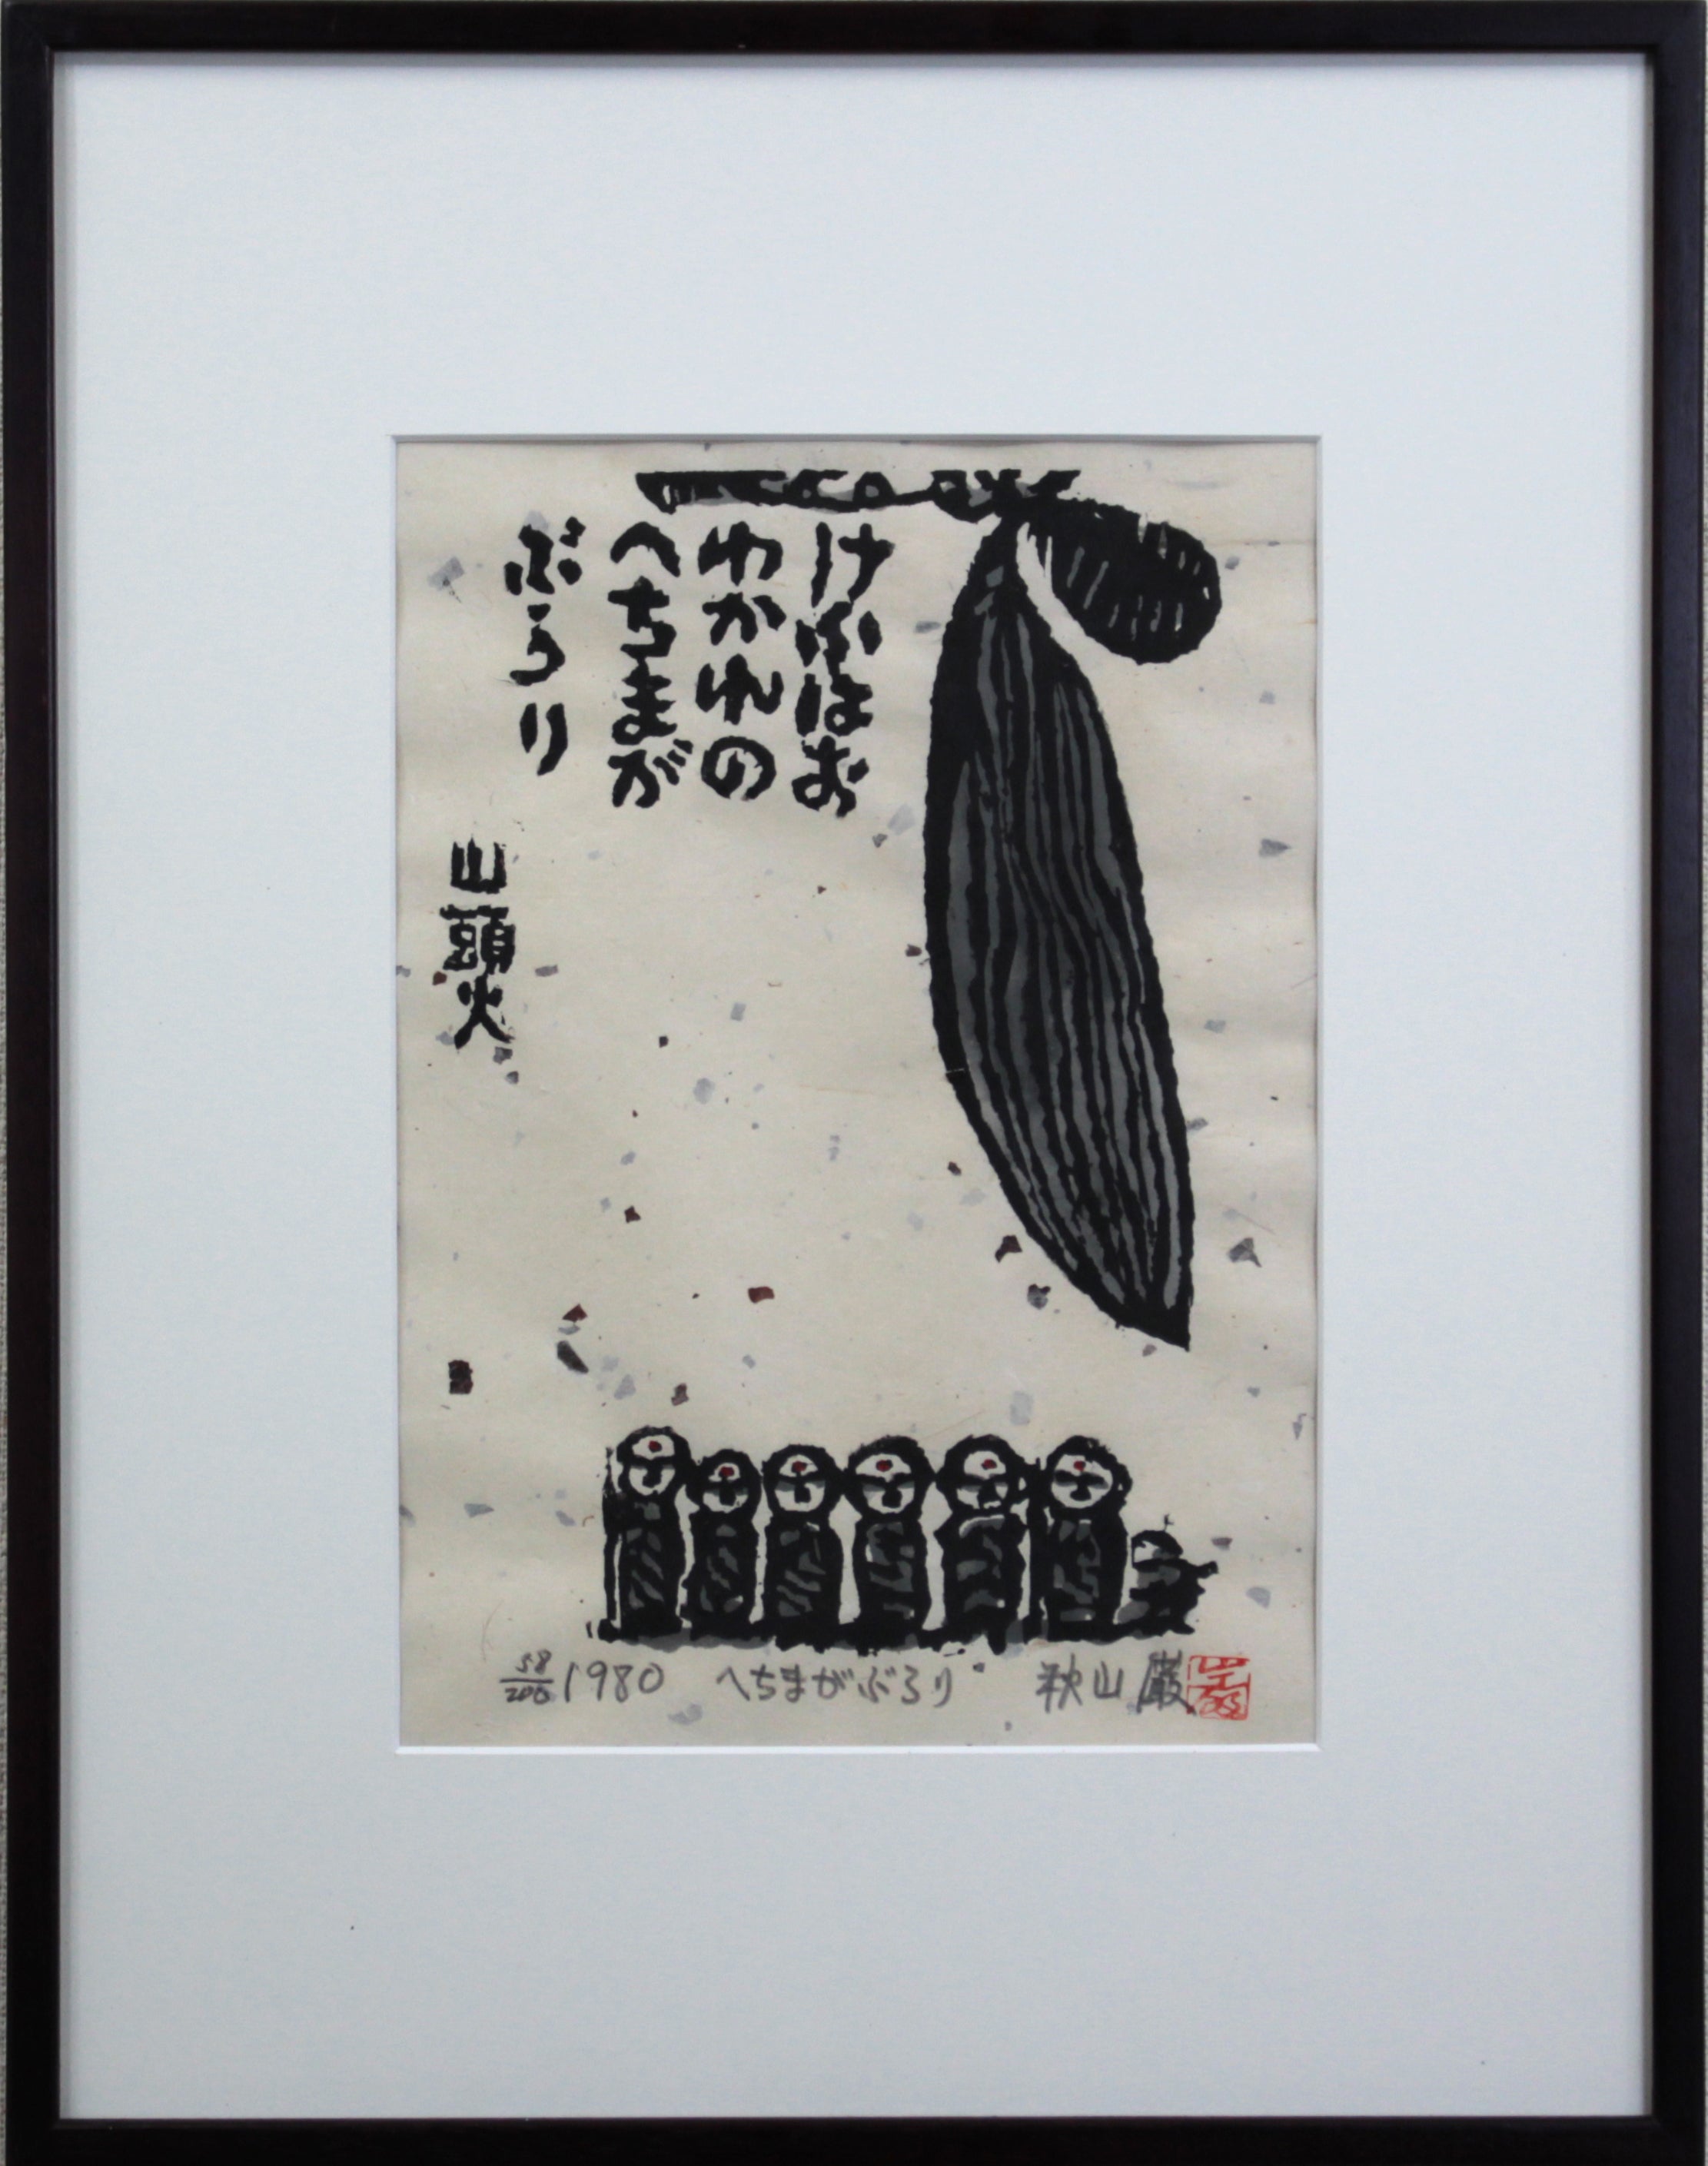 最も完璧な みみずく①- 秋山巌 秋山巌 版画 絵画 1981 おばんです 